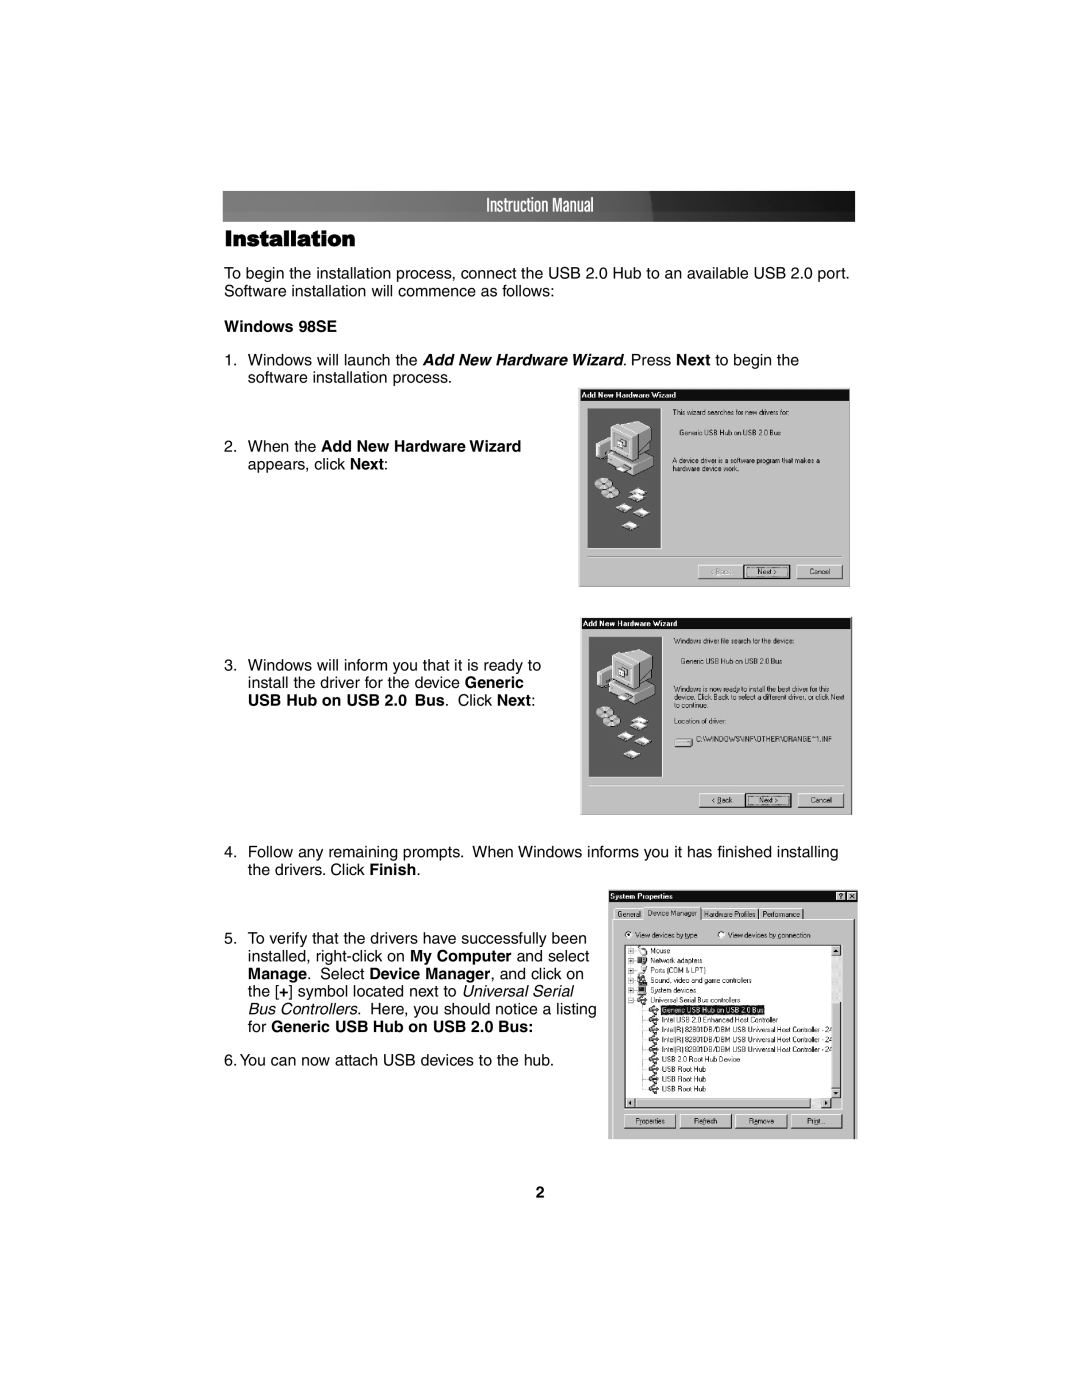 StarTech.com ST7202USB, ST4202USB instruction manual Installation, Instruction Manual, Windows 98SE 